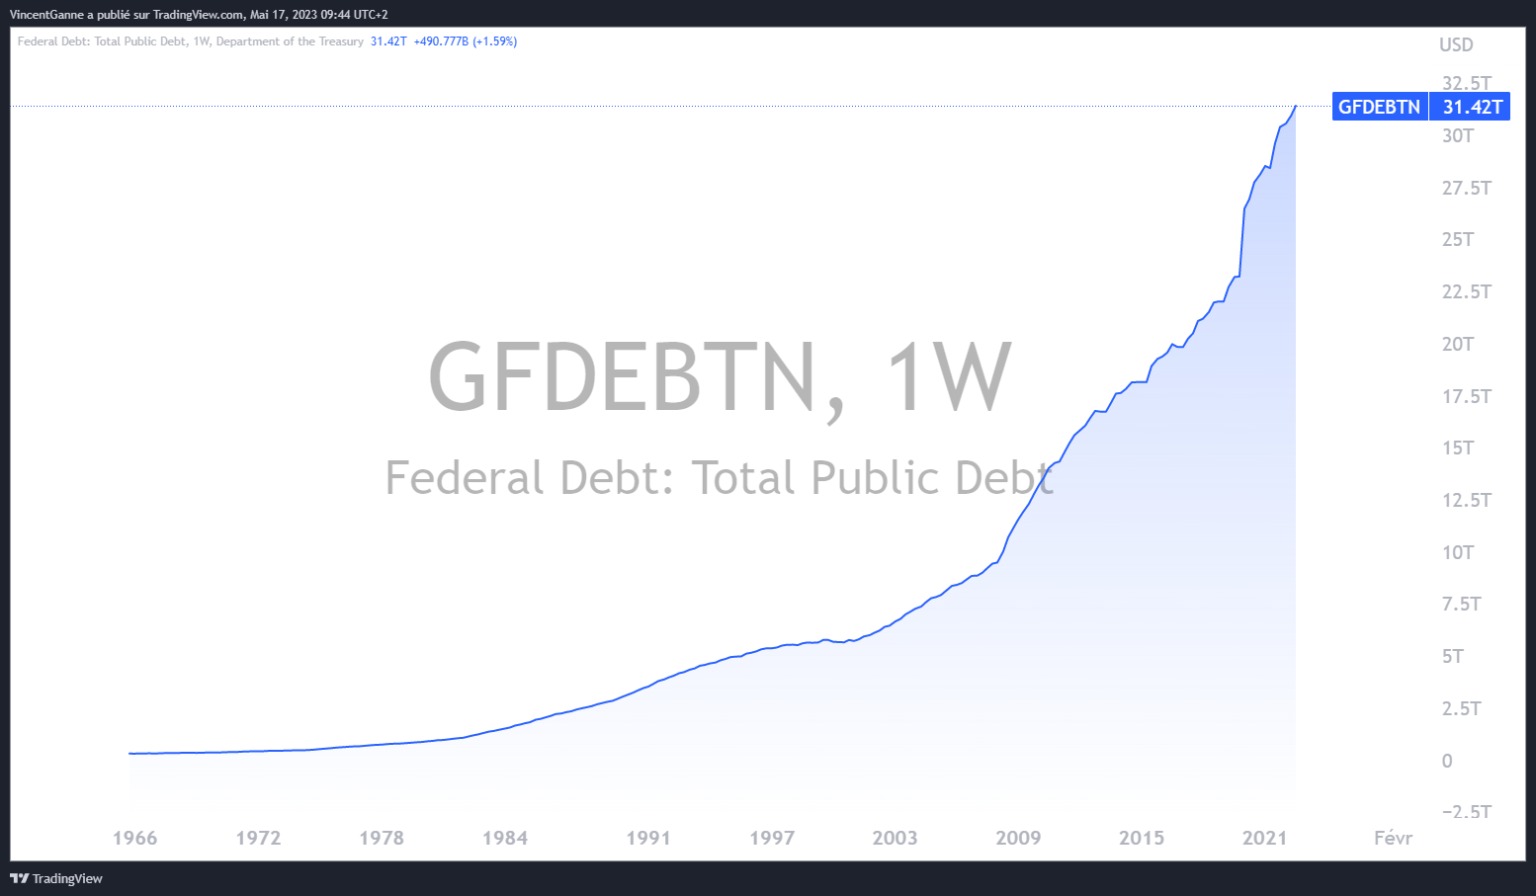 Graf znázorňující vývoj výše veřejného dluhu ve Spojených státech